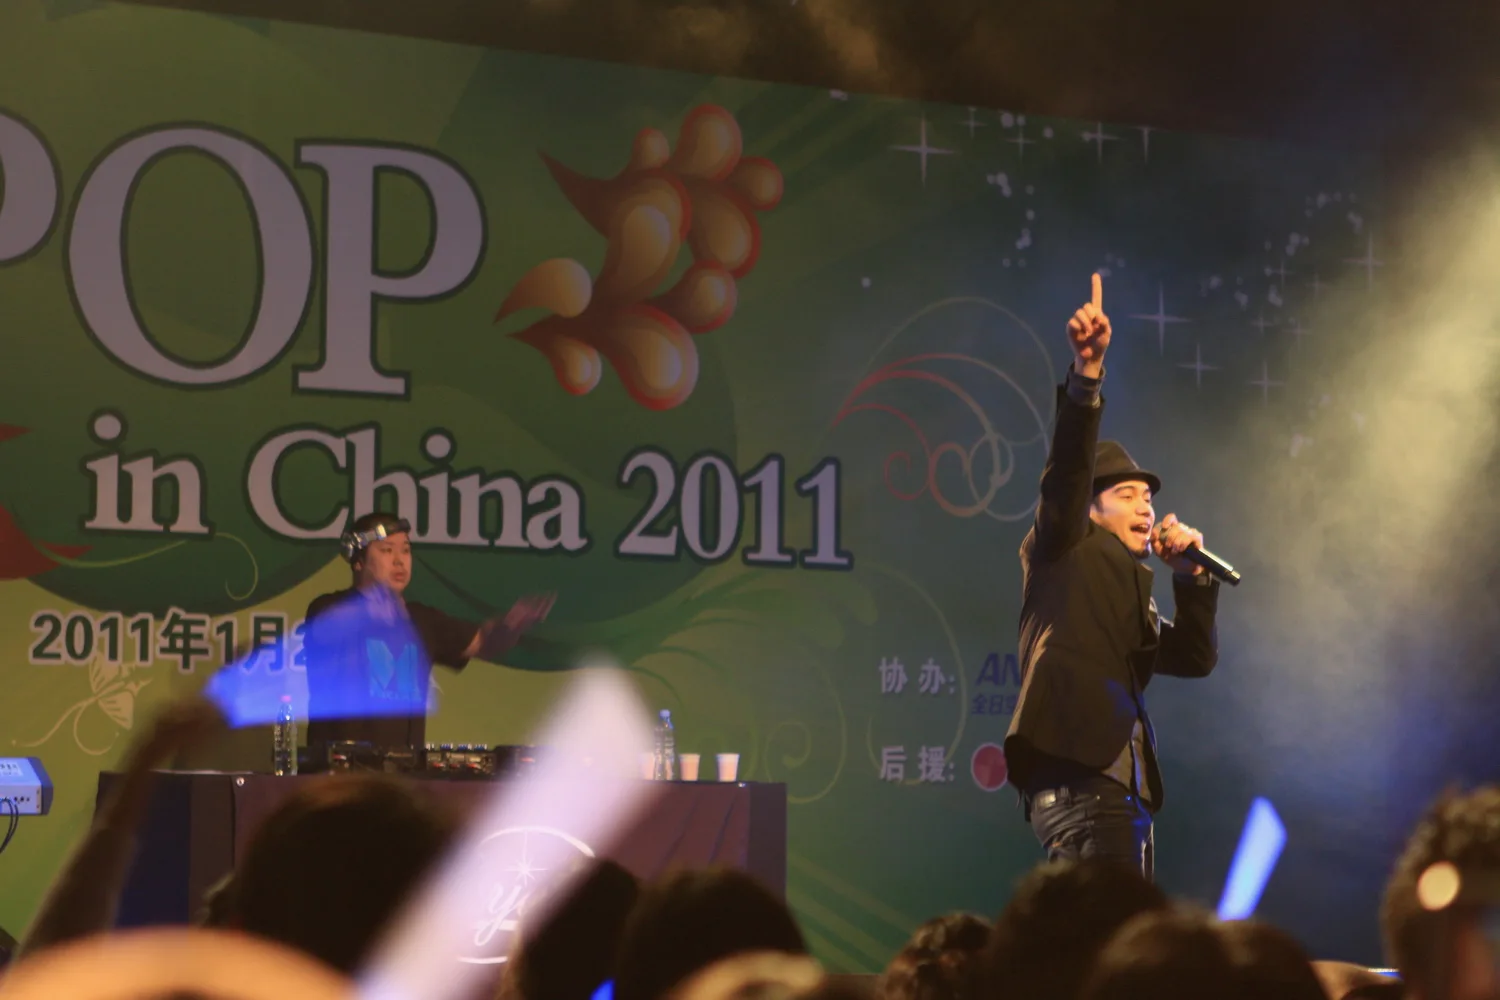 2011年的北京糖果举办了一场曾经为《寒蝉悲鸣之时》演唱过歌曲的日本歌手彩音的小型演唱会。